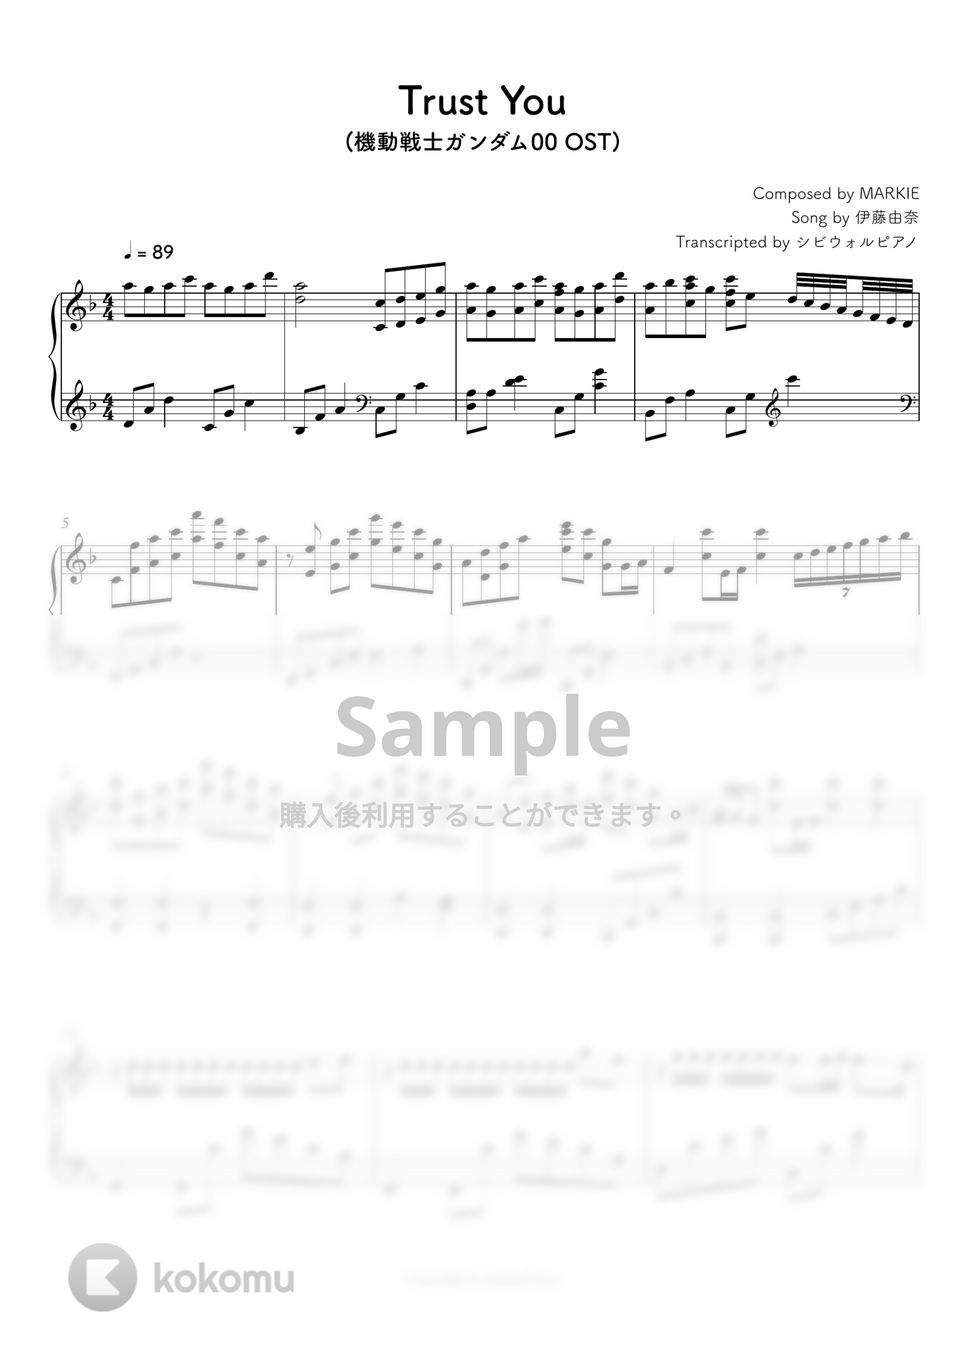 機動戦士ガンダム00 - Trust You by シビウォルピアノ